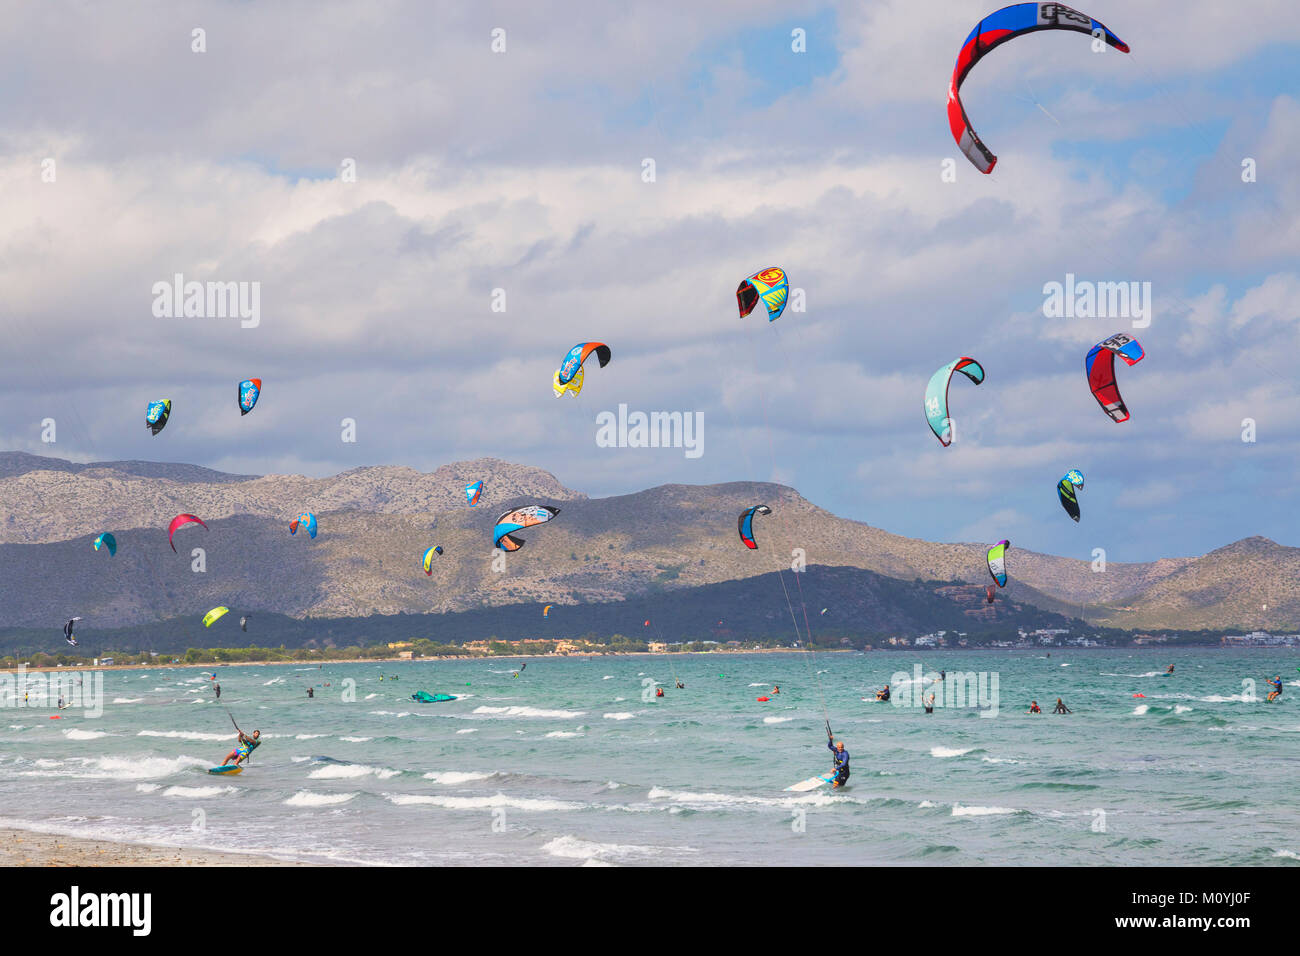 Kitesurfen auf Wellen im Meer, Strand von Alcudia, Mallorca, Balearen, Spanien Stockfoto